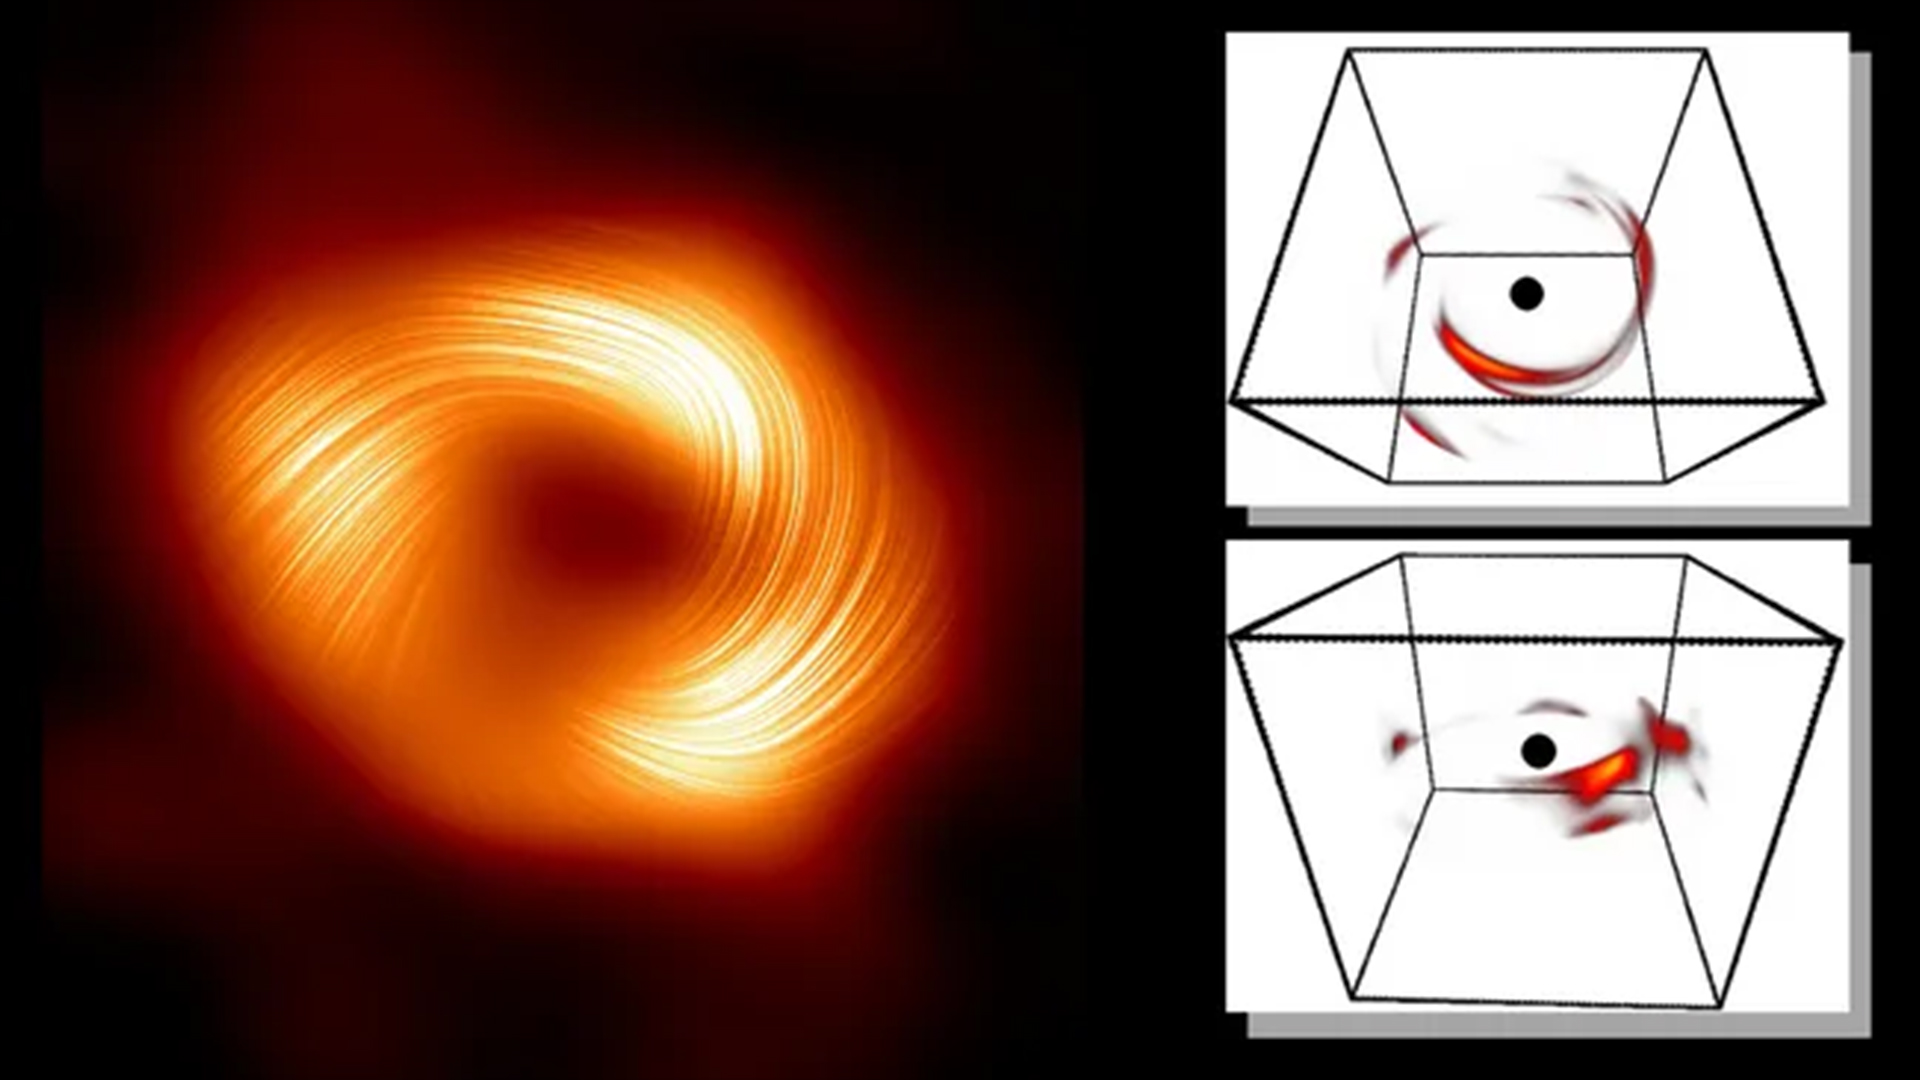 Bagliore esplosivo del buco nero dal centro della nostra galassia ricostruito da “un singolo pixel tremolante” utilizzando l’intelligenza artificiale e le equazioni di Einstein